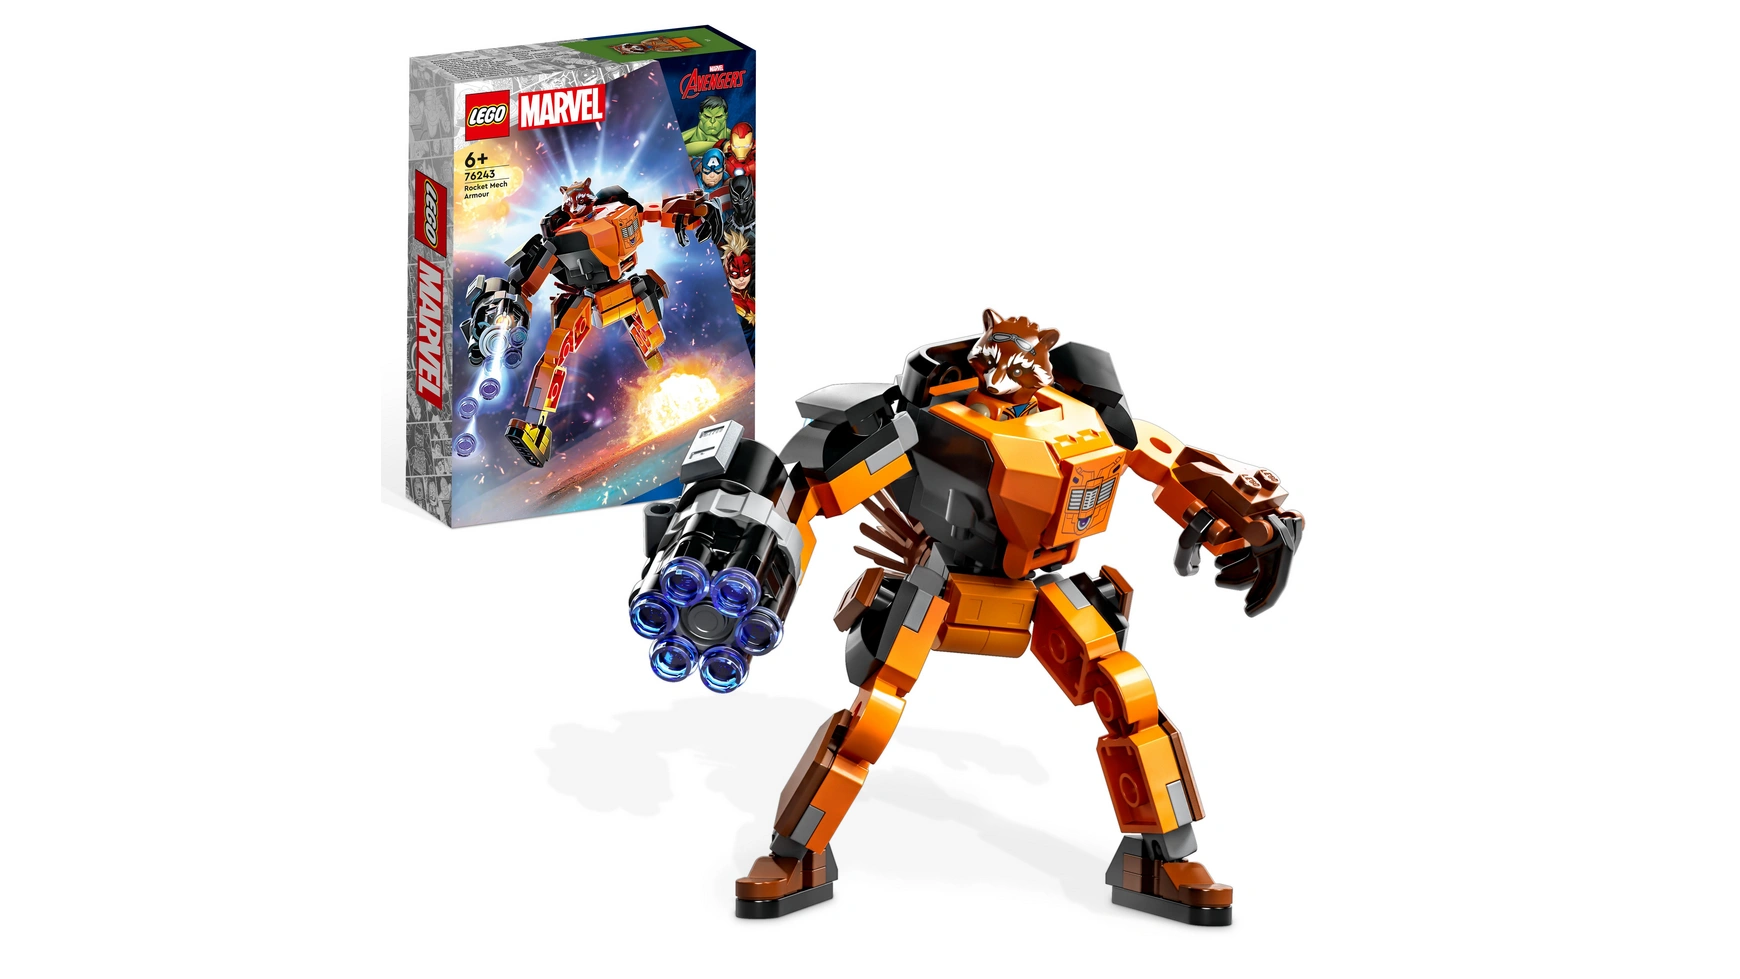 Lego Marvel Ракетный робот, фигурка из Стражей Галактики поло marvel gotg rocket racoon